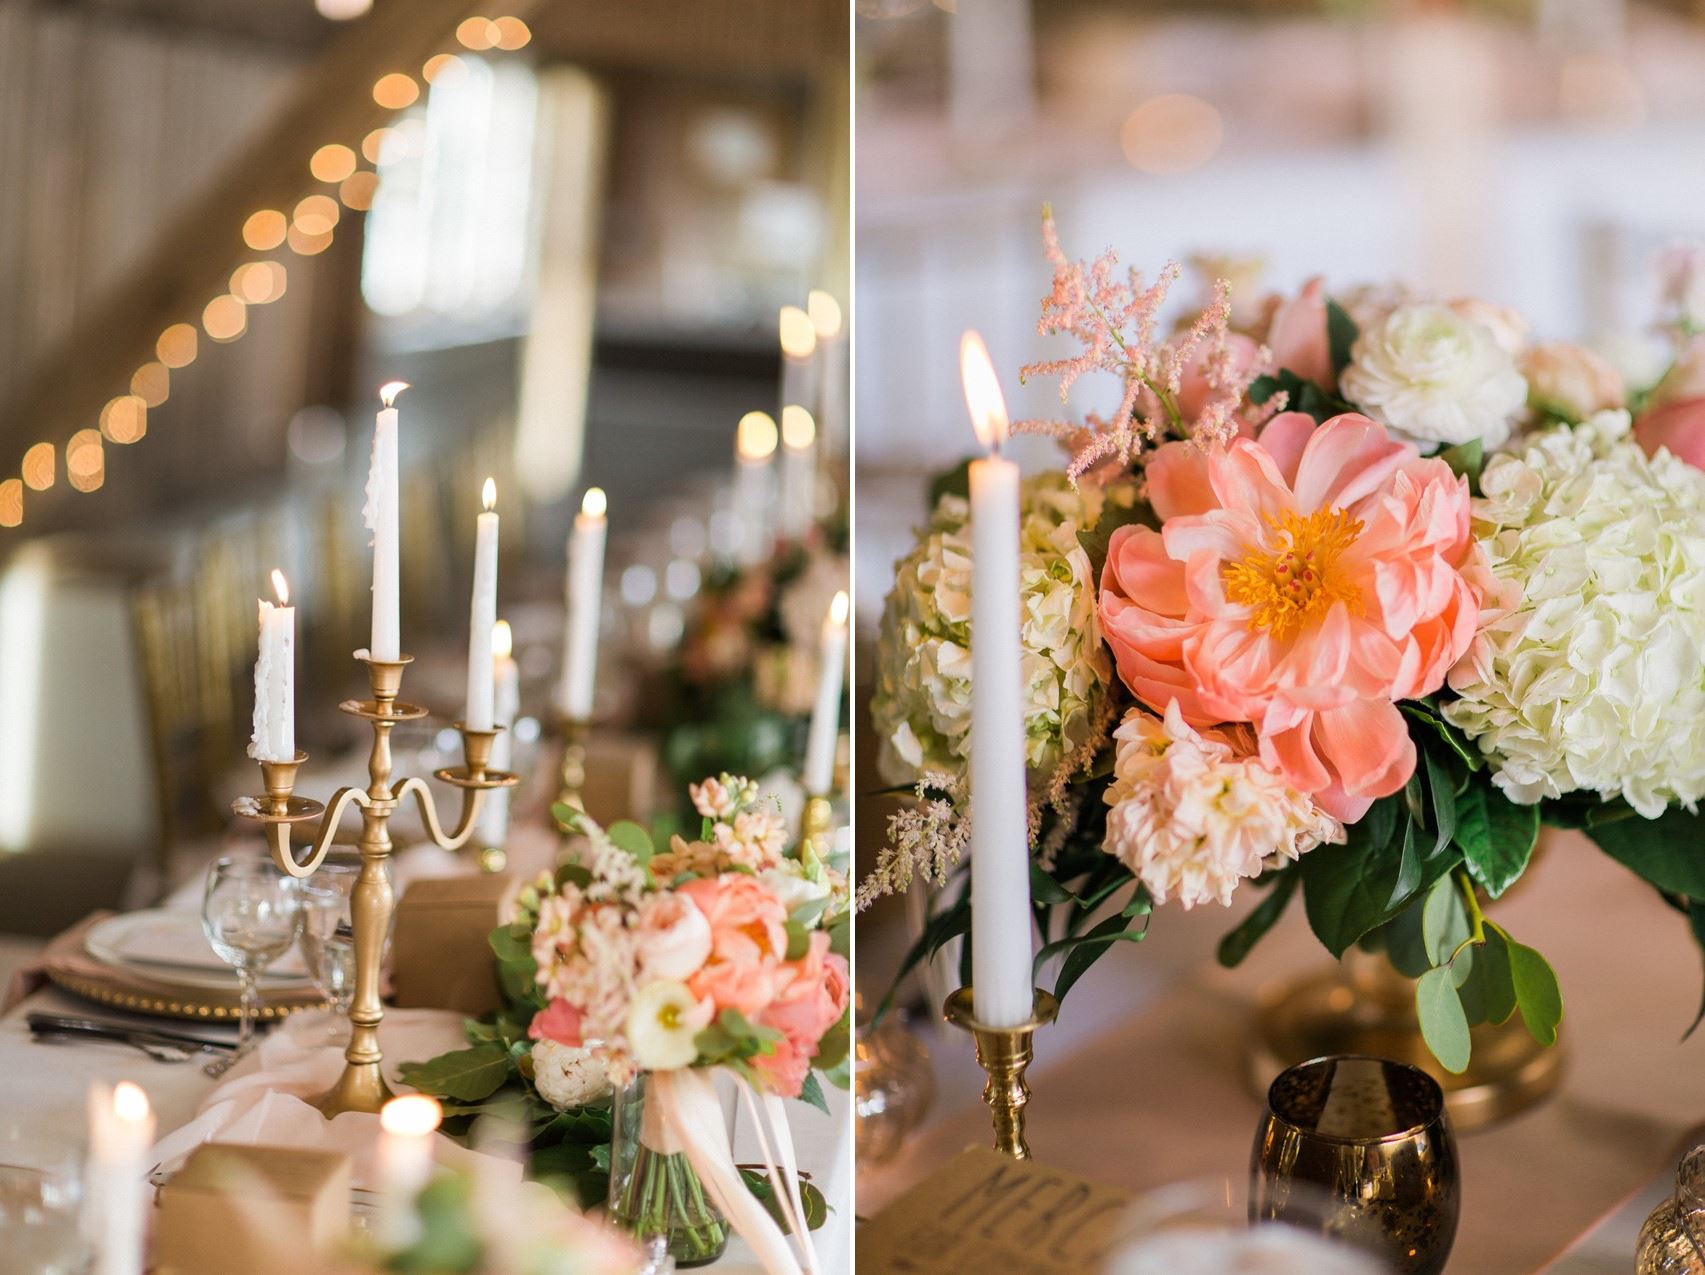 Elegant Wedding Tablescape - A Romantic Modern-Vintage Wedding with an Elegant Barn Reception Romantic Modern-Vintage Wedding with an Elegant Barn Reception